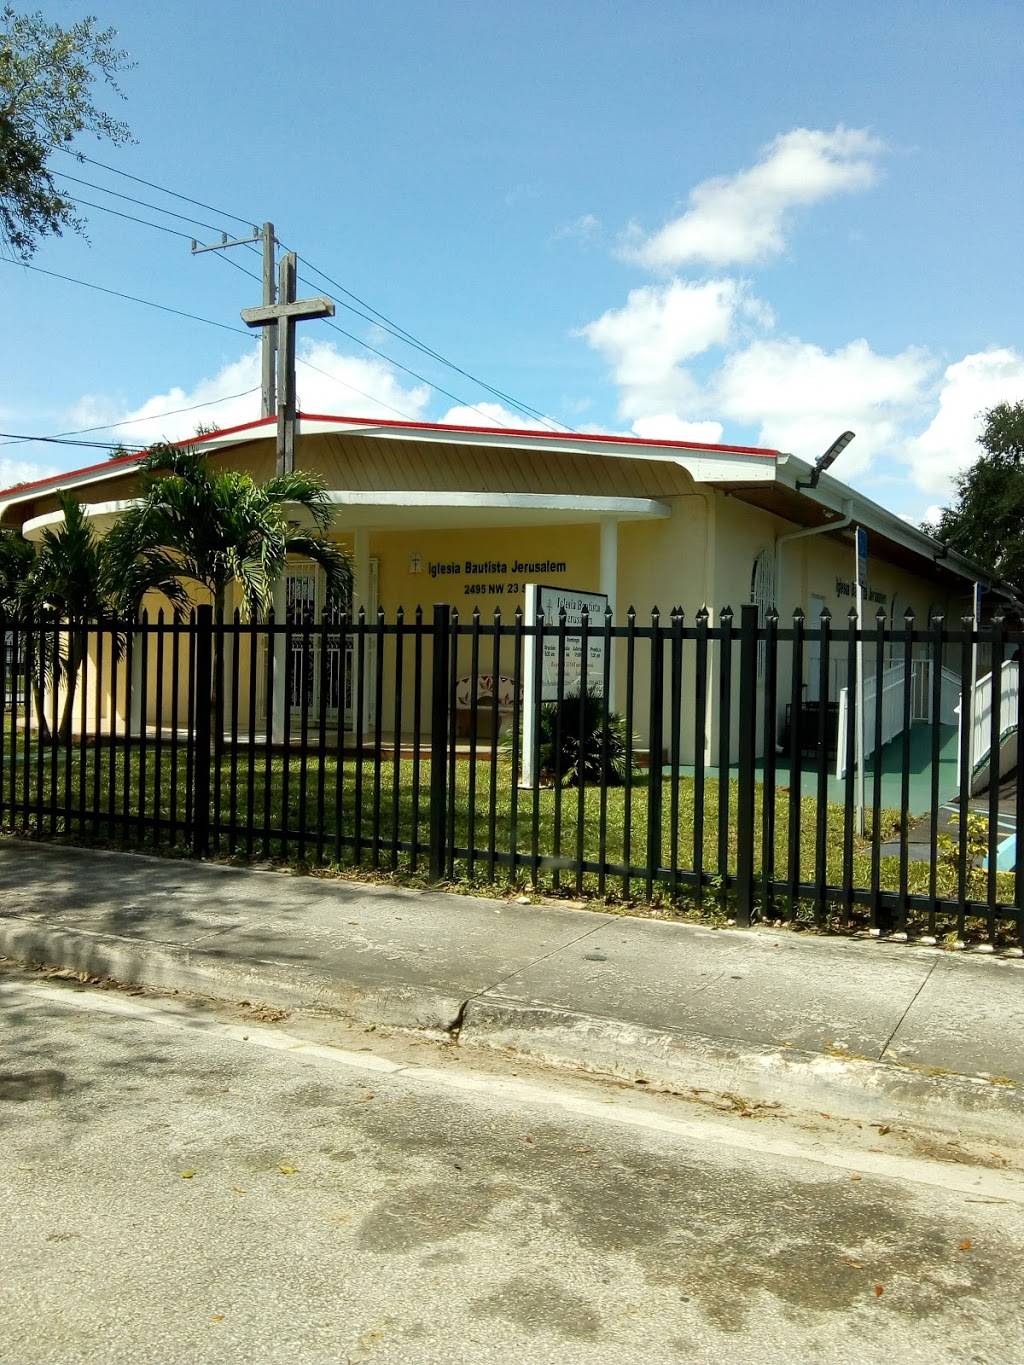 Iglesia Bautista Jerusalem | 2495 NW 23rd St, Miami, FL 33142, USA | Phone: (786) 409-2022